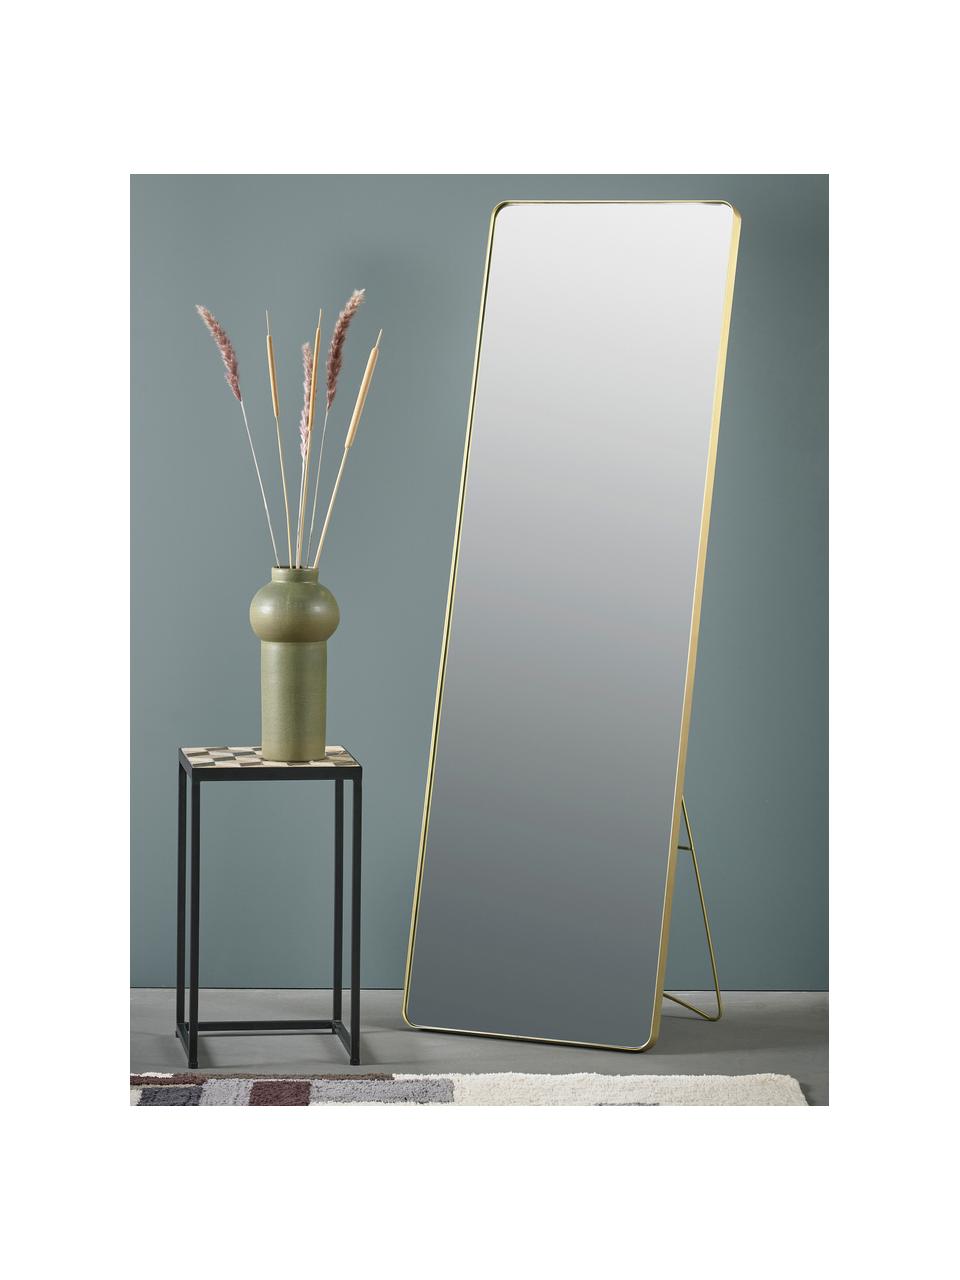 Eckiger Standspiegel Stefo mit goldenem Metallrahmen, Rahmen: Metall, beschichtet, Spiegelfläche: Spiegelglas, Goldfarben, B 45 x H 140 cm